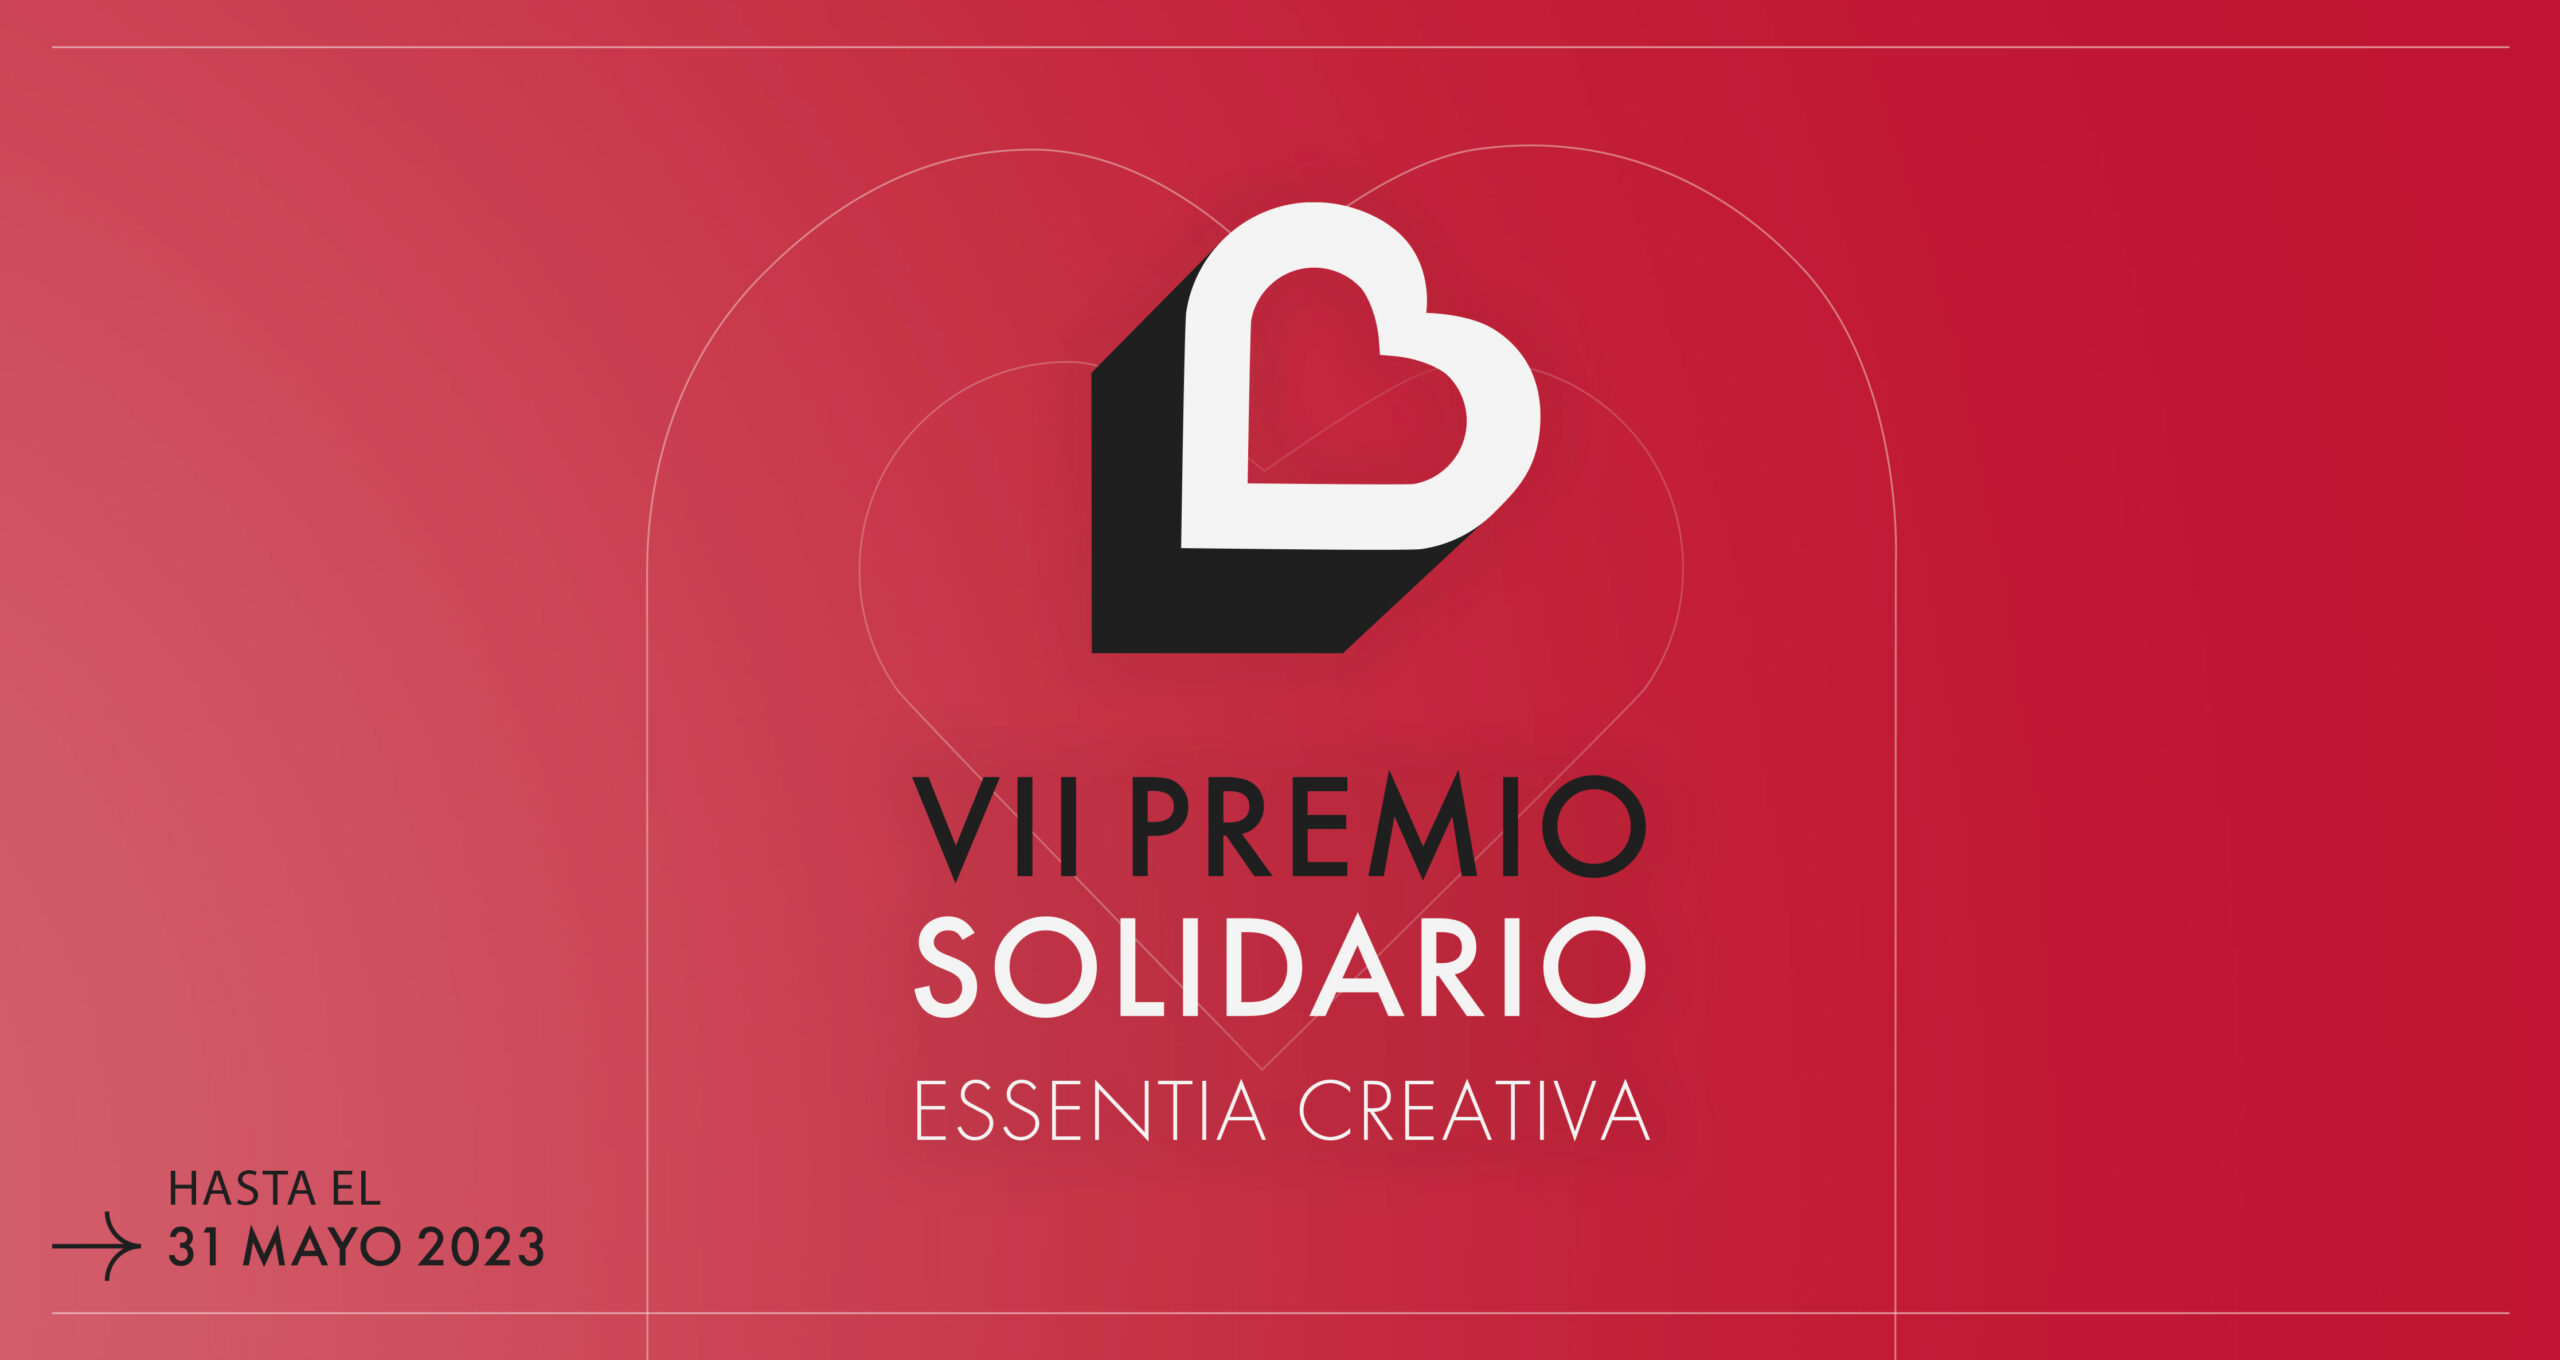 Zaragozala: «Séptima edición del premio solidario de Essentia Creativa»